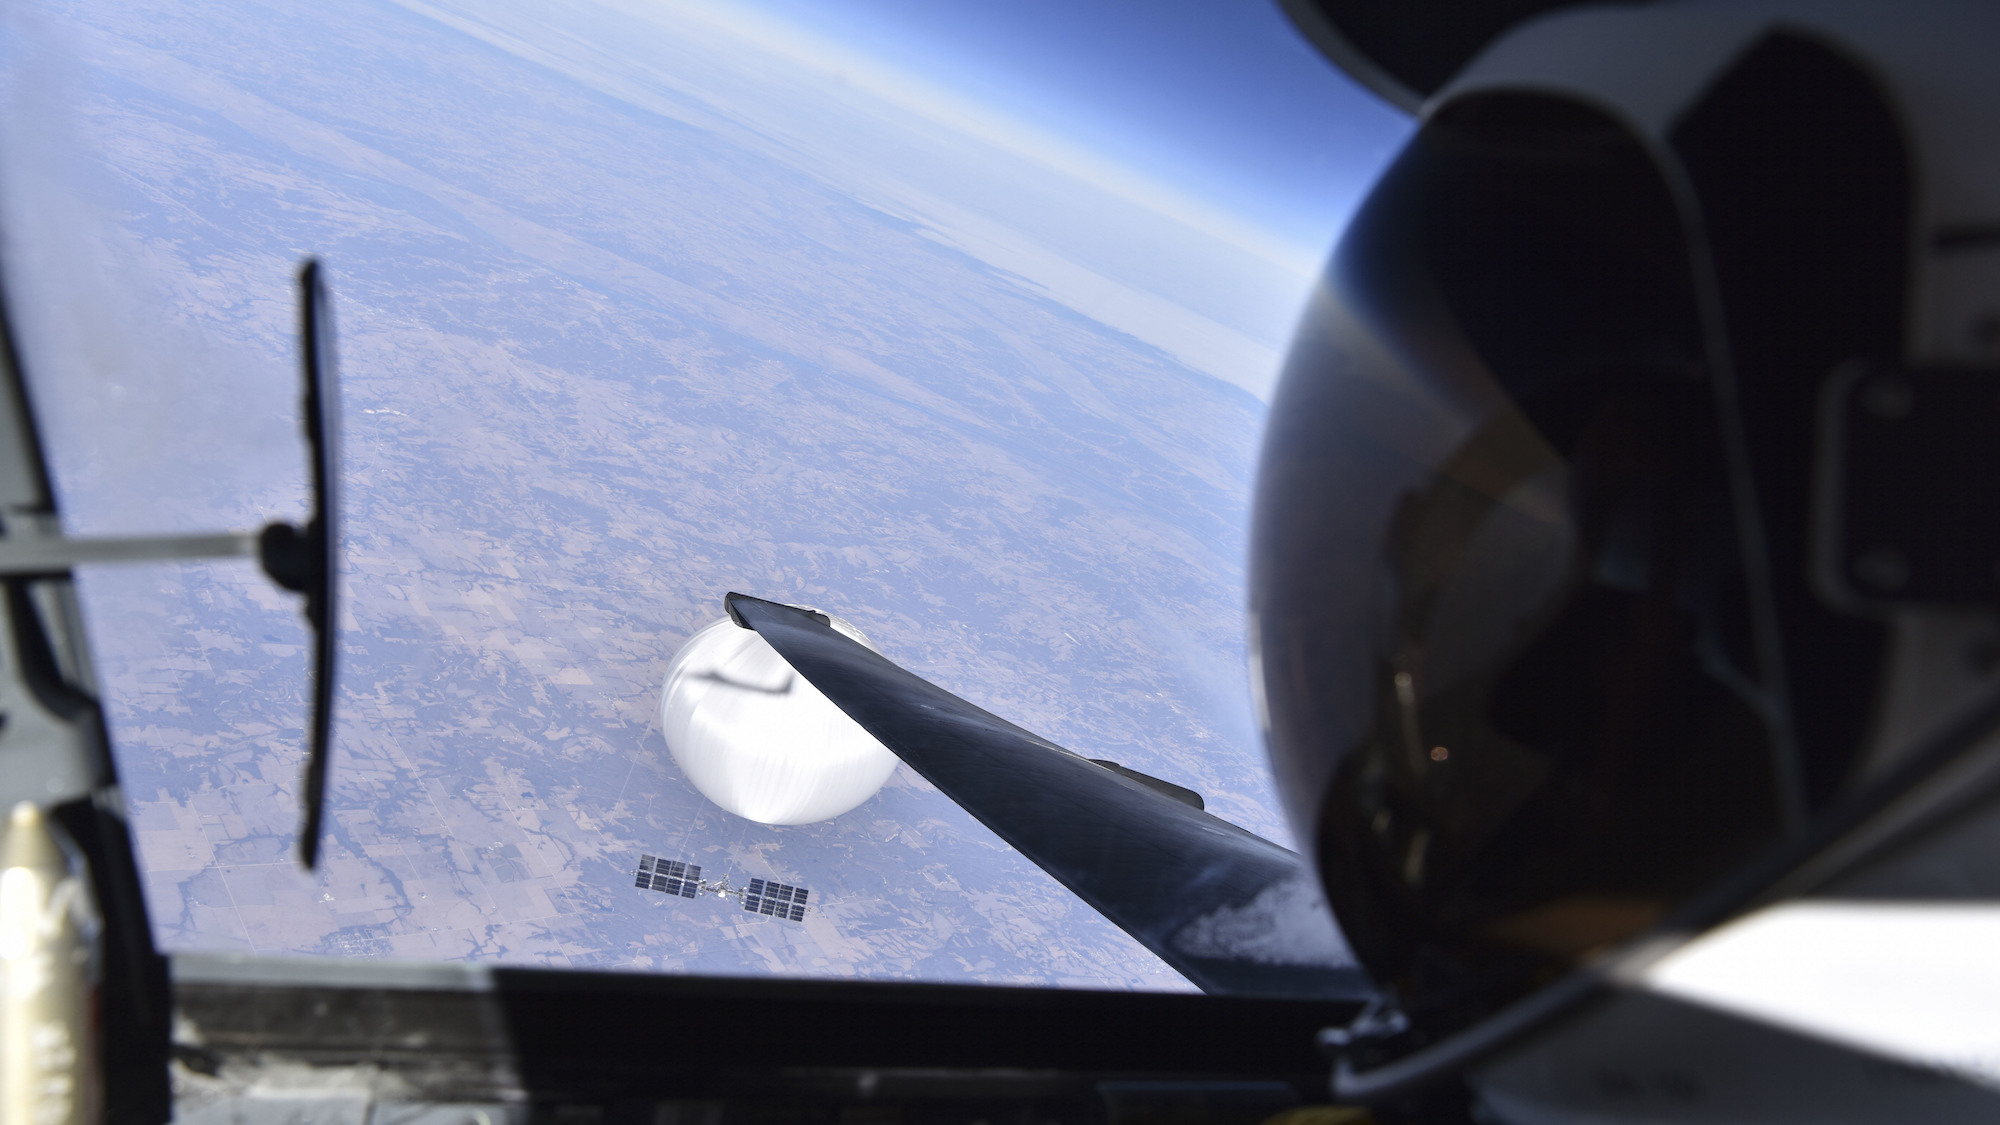 Una mirada de cerca al avión espía U-2 y esa selfie con globo